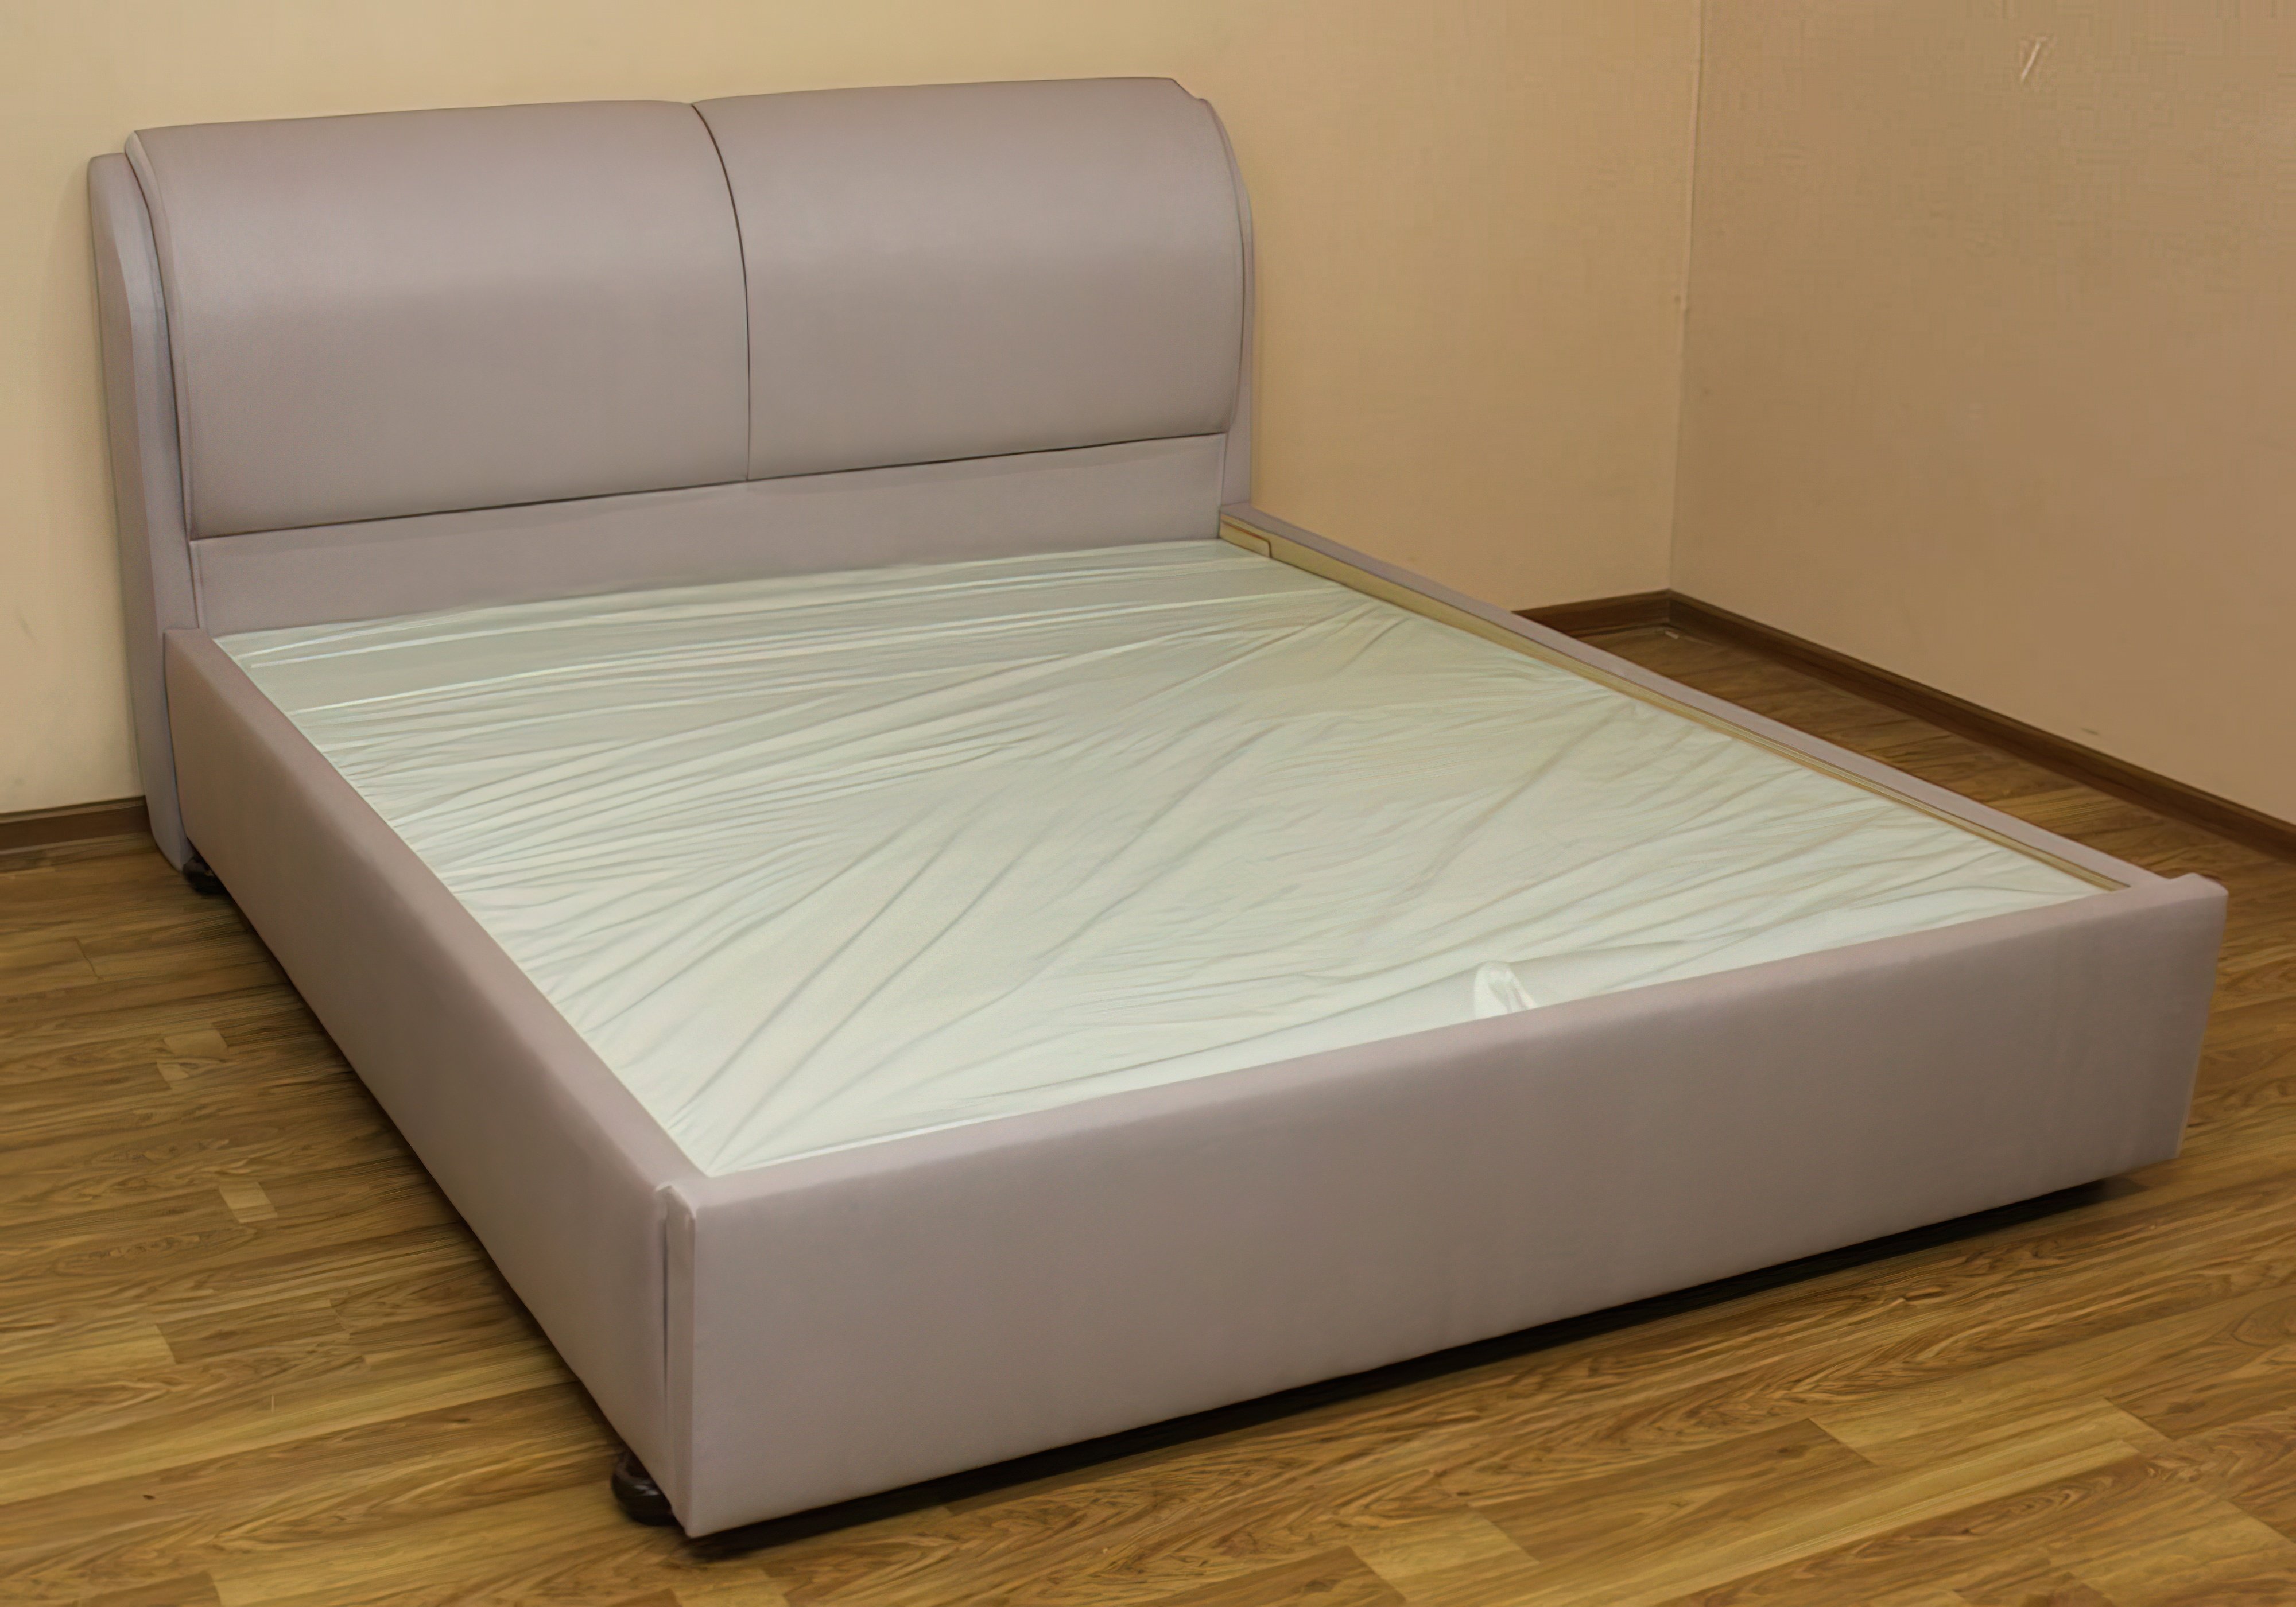  Купить Кровати Кровать с подъемным механизмо "Афина" Катунь